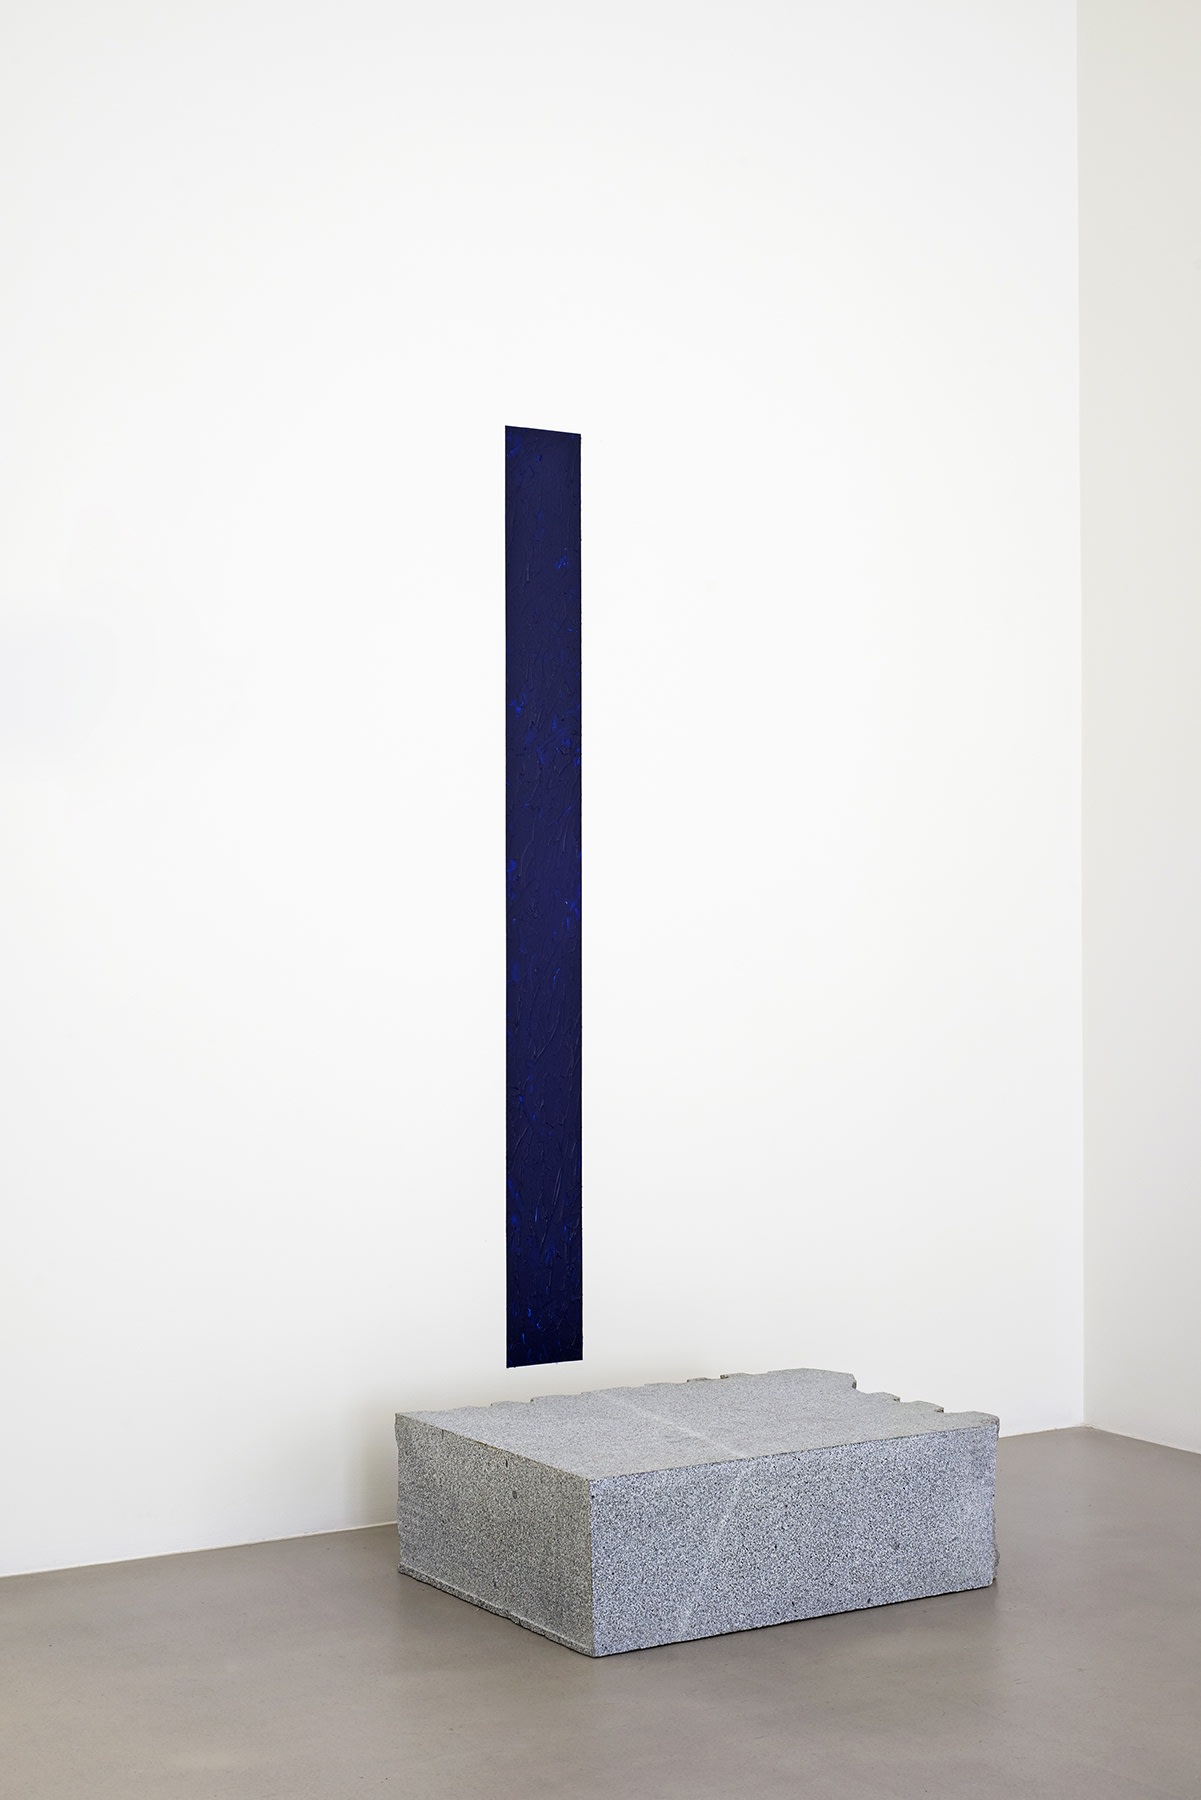 Skinny deep blue painting mounted above slab of granite.